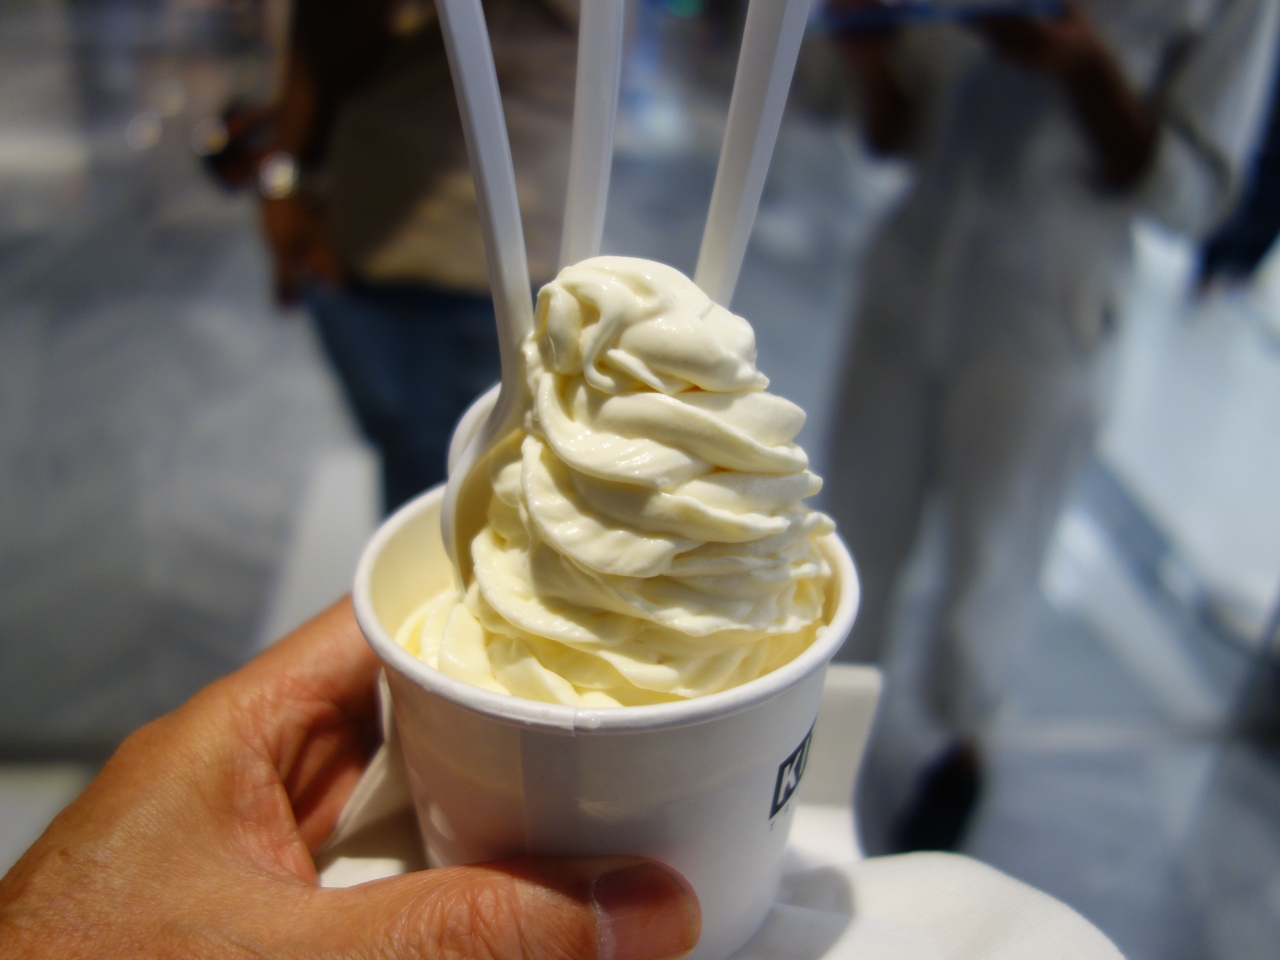 Nycを歩く 6 10 ニューヨーク旅行の仕上げは Snark Park のアイスクリームです ニューヨーク アメリカ の旅行記 ブログ By Nomonomoさん フォートラベル